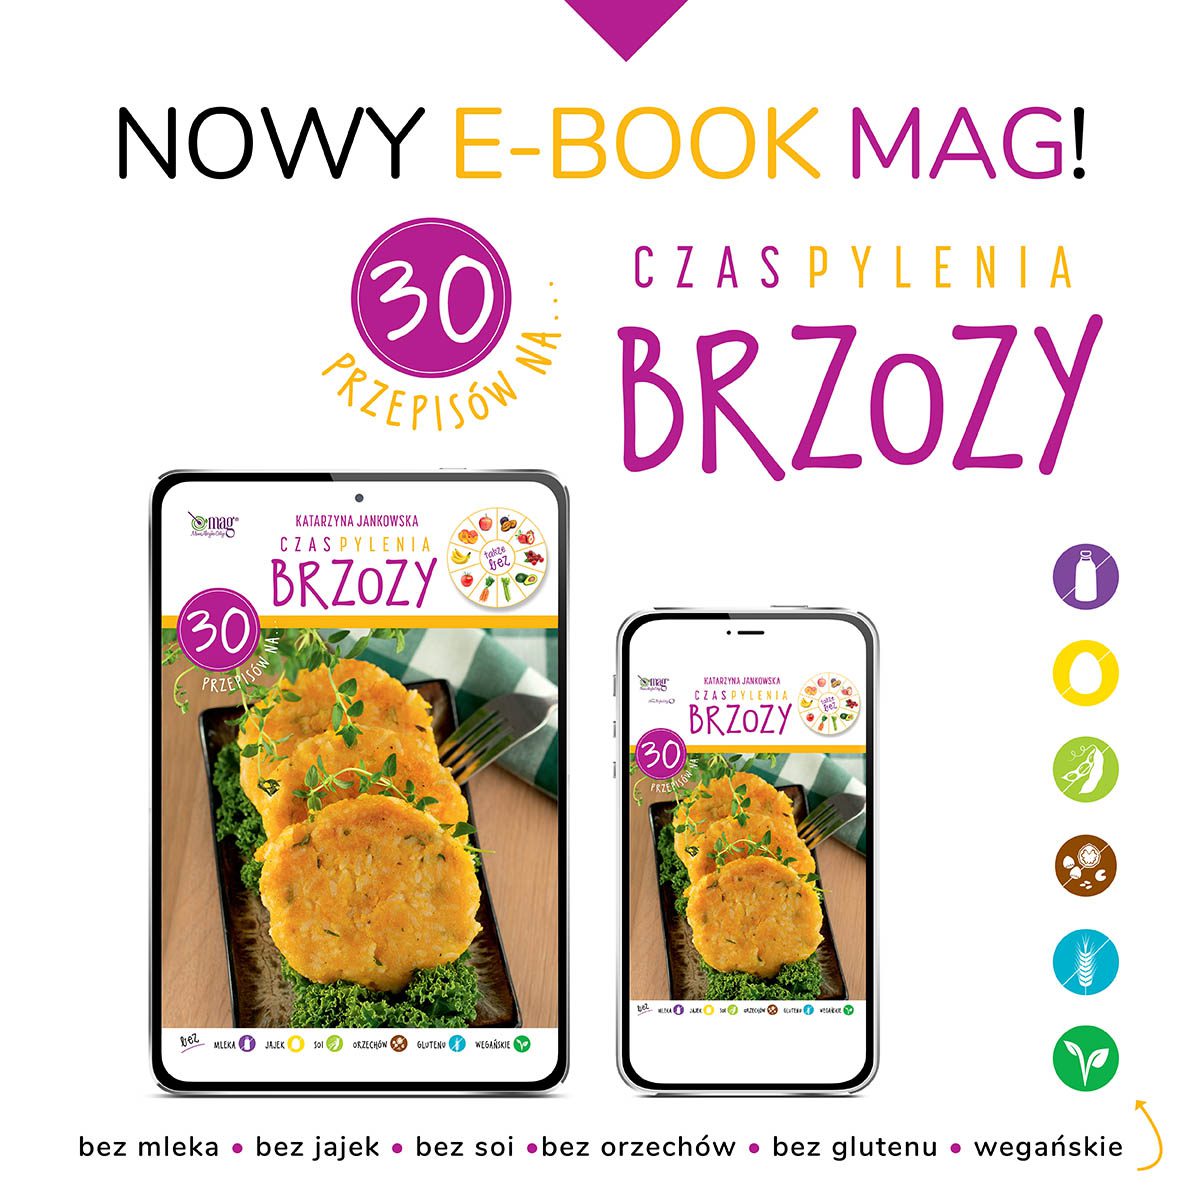 E-book "30 przepisów na... CZAS PYLENIA BRZOZY"